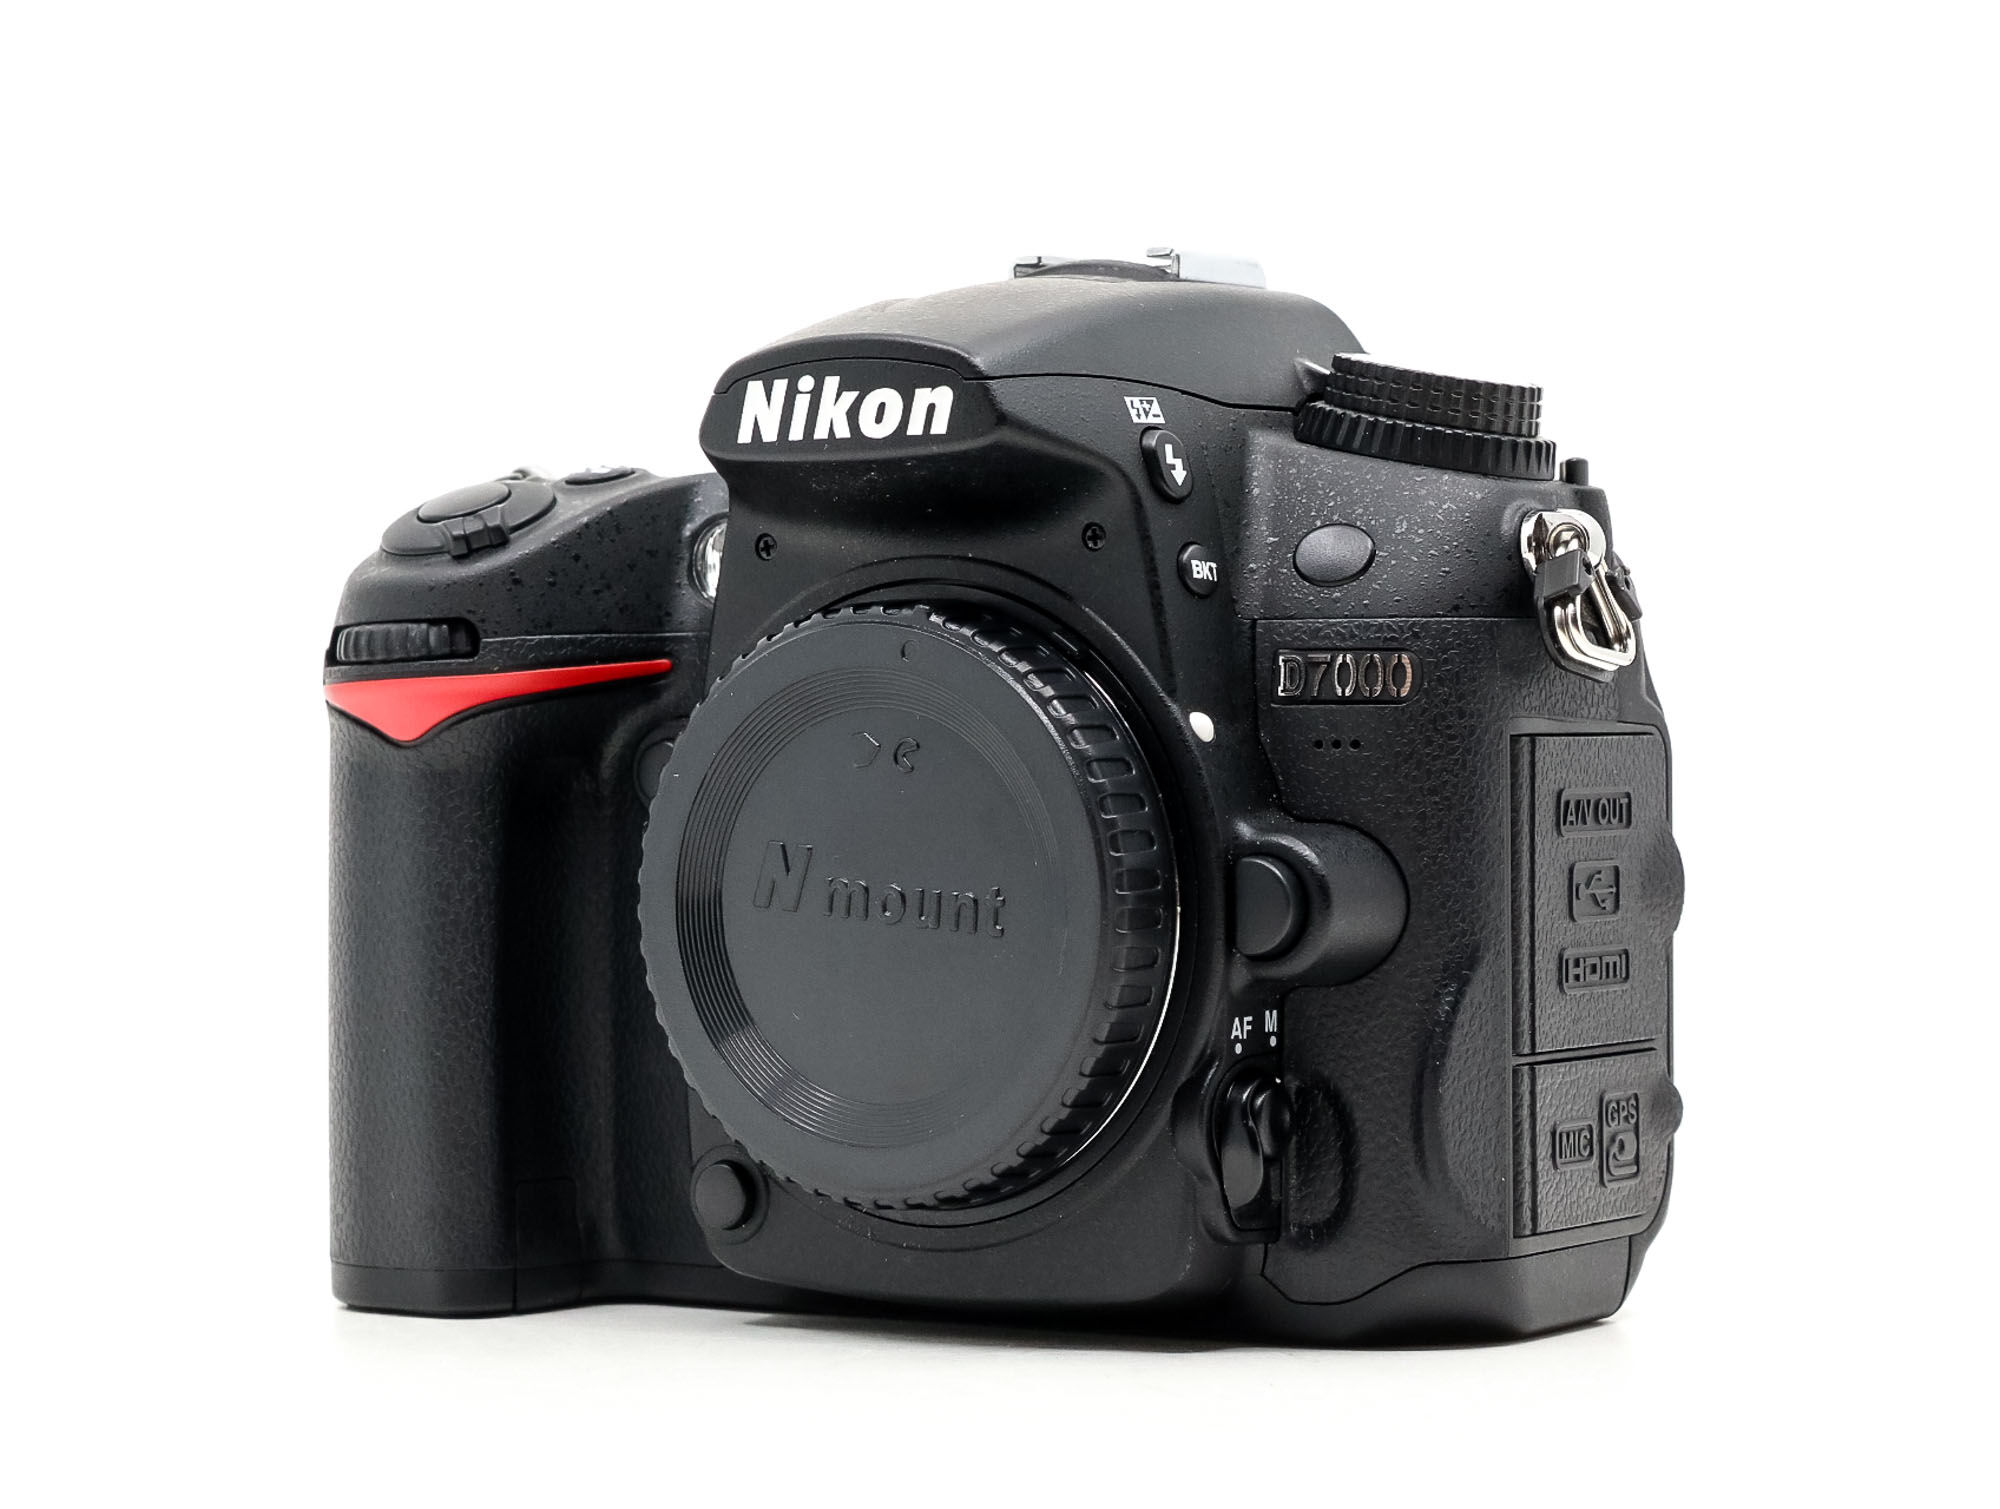 Nikon D7000 (Condition: Excellent)